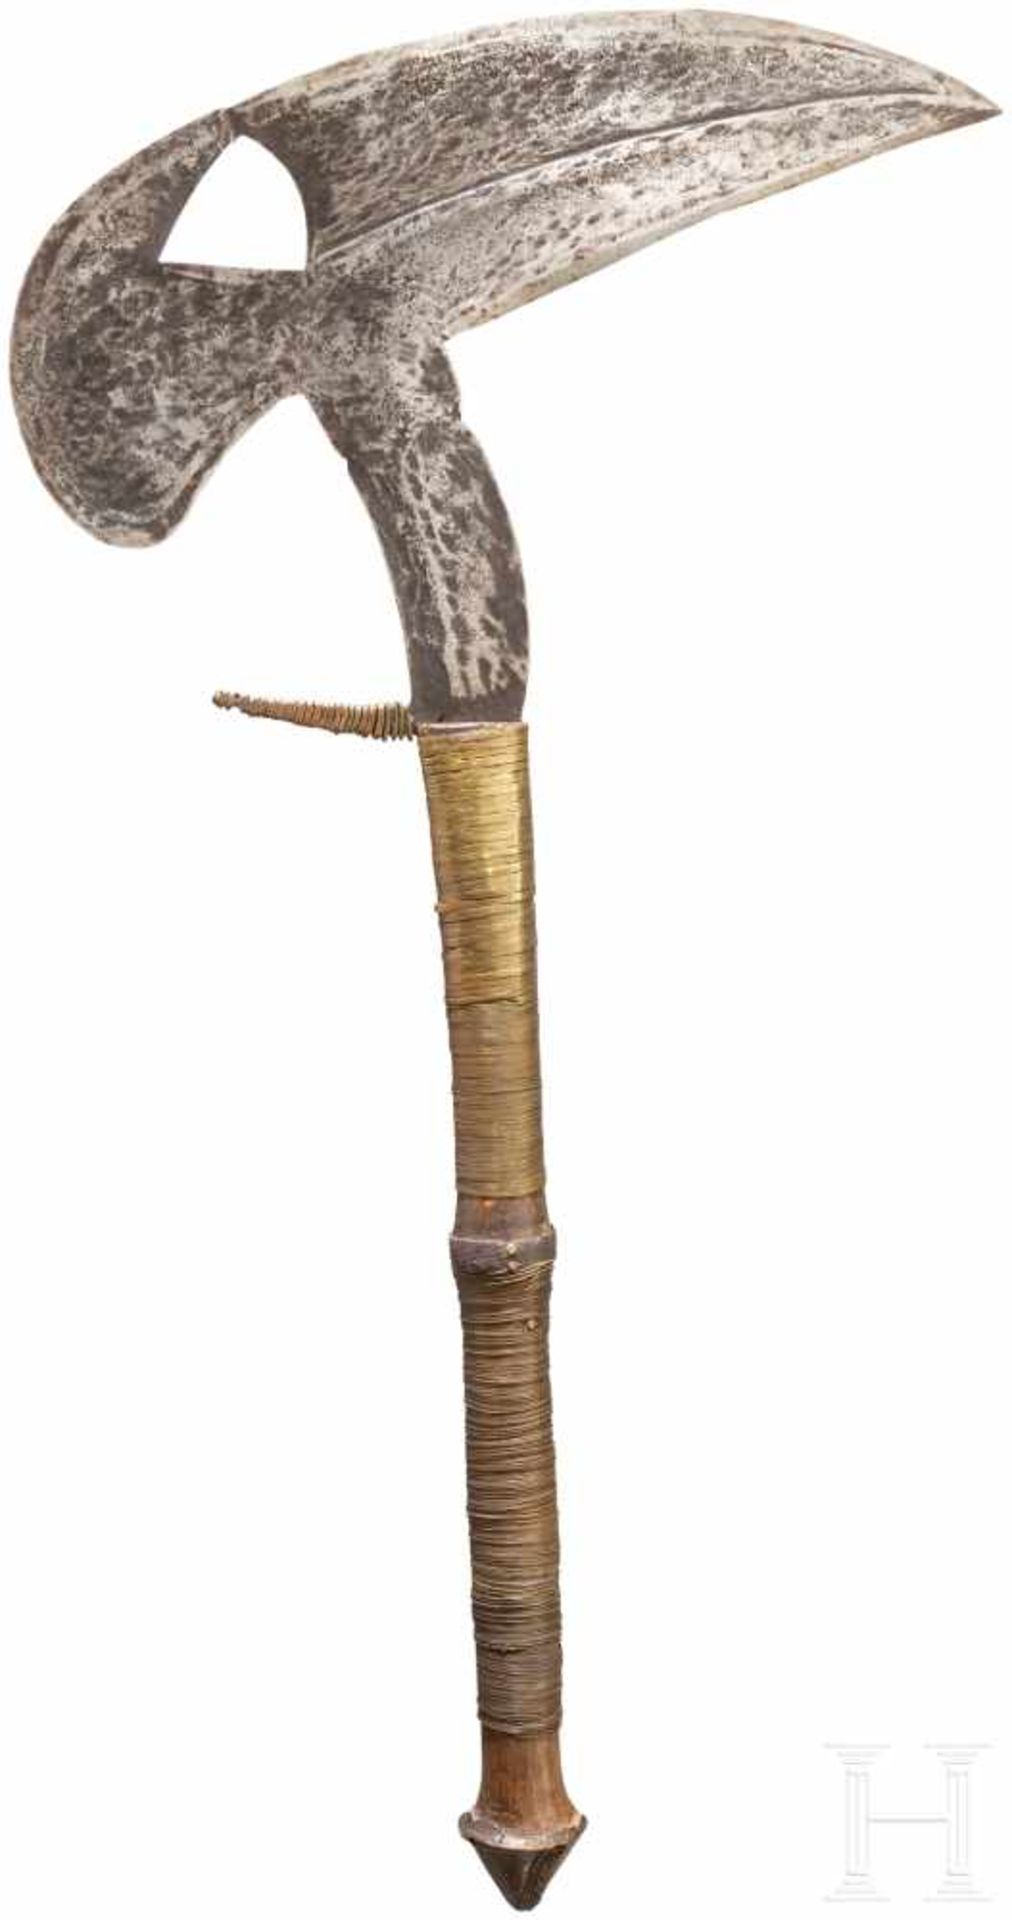 Großes Vogelkopfmesser der Kota/Fang, WestafrikaTypische, axtartig geformte Klinge mit dreieckigem - Bild 2 aus 2